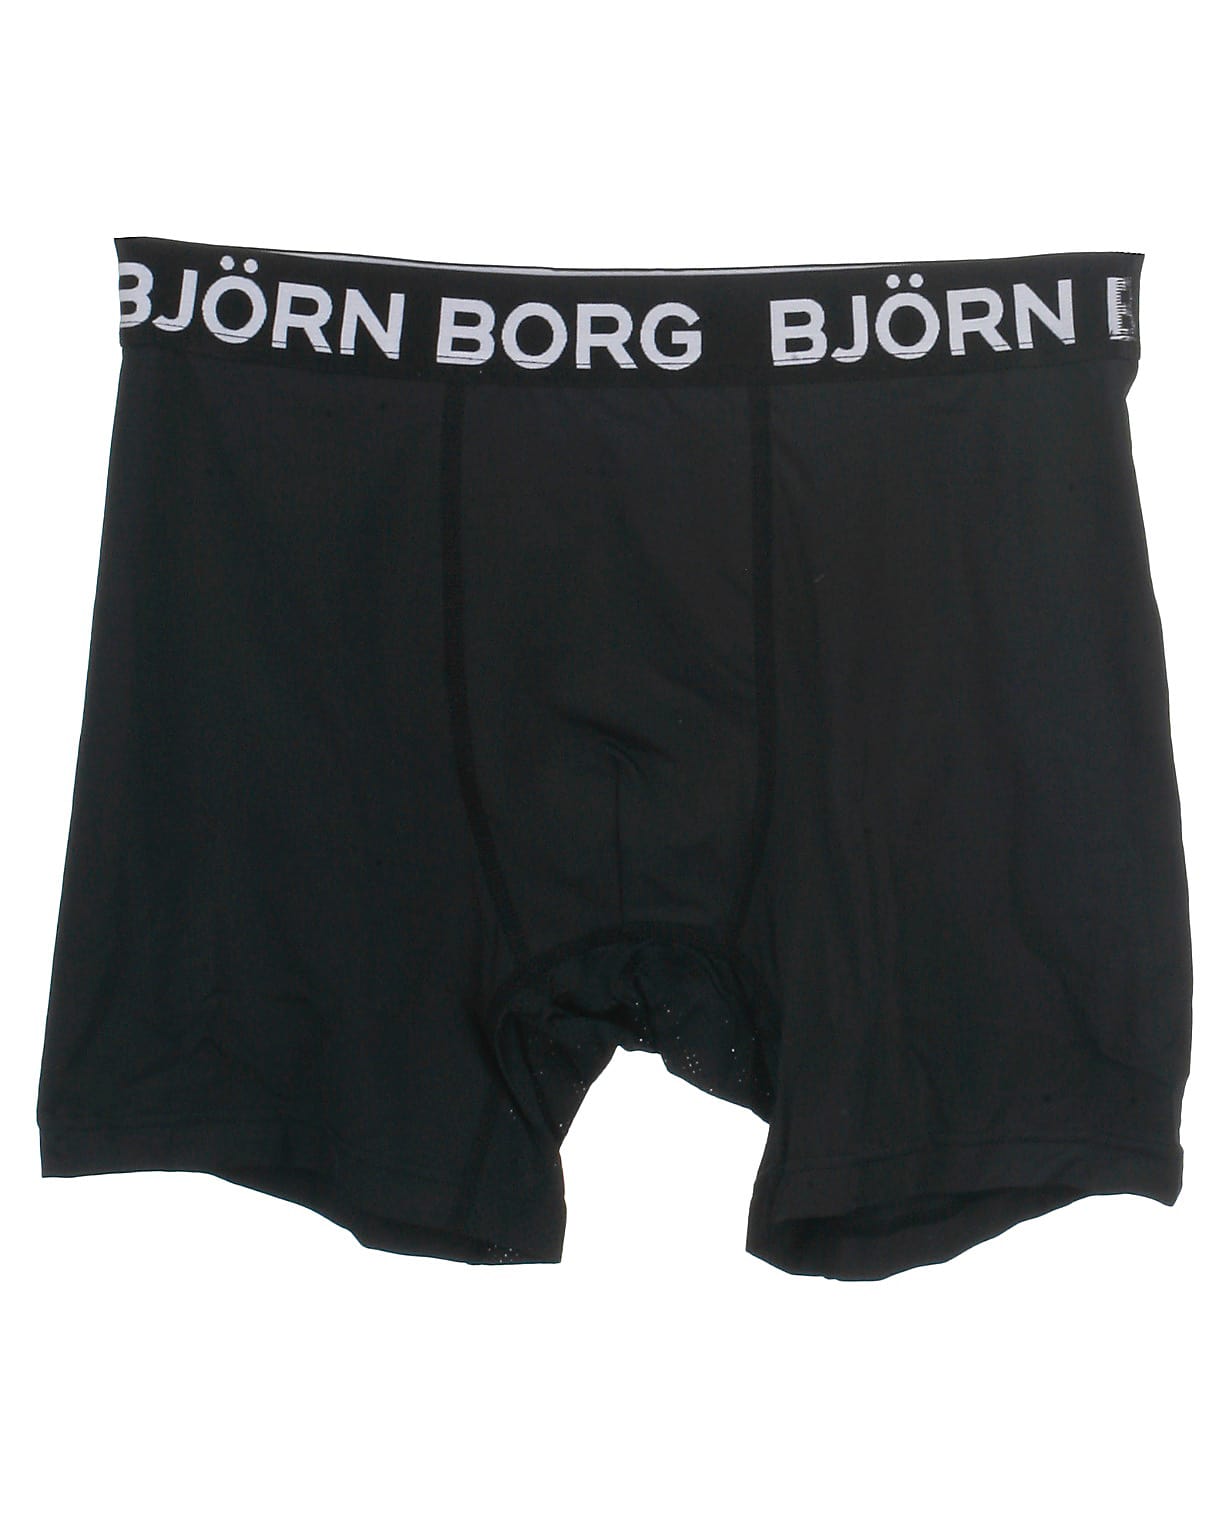 Björn Borg tights